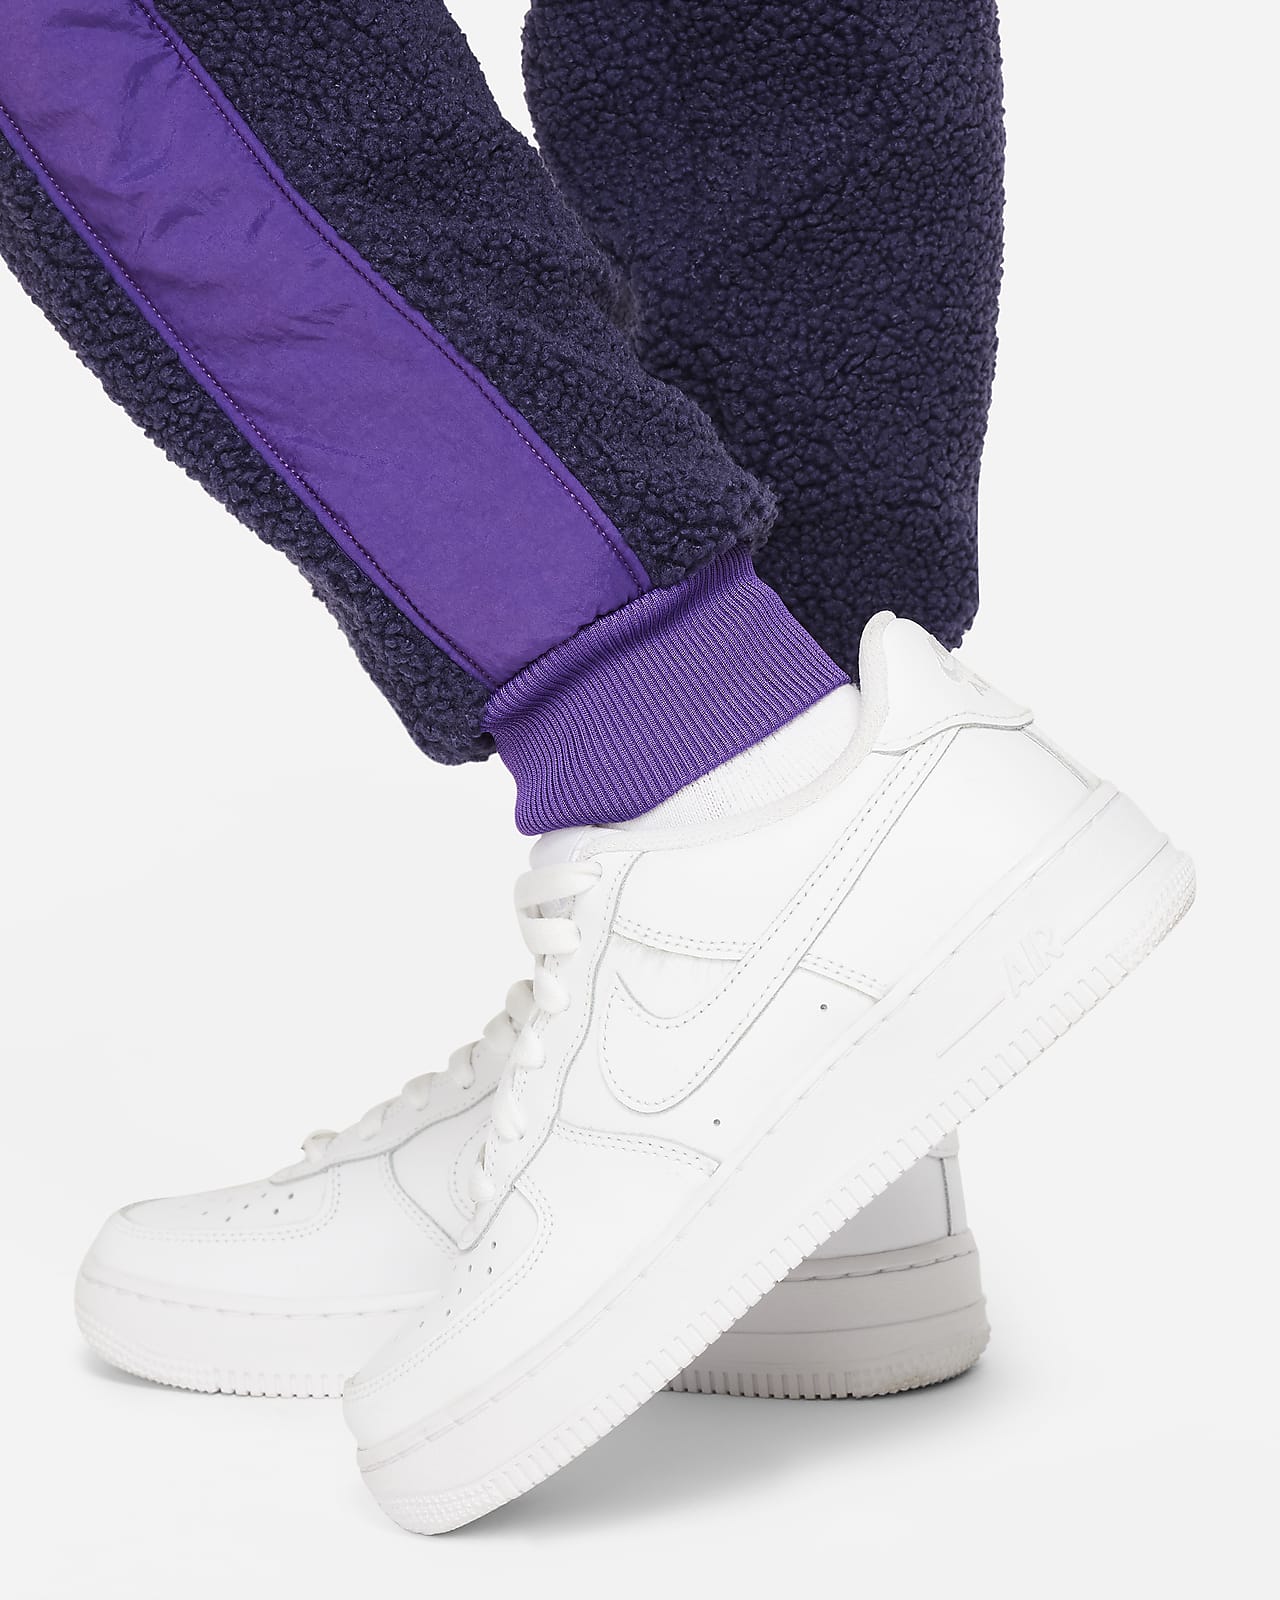 Buy Nike Women's Air Fleece Sweatpants Purple in KSA -SSS